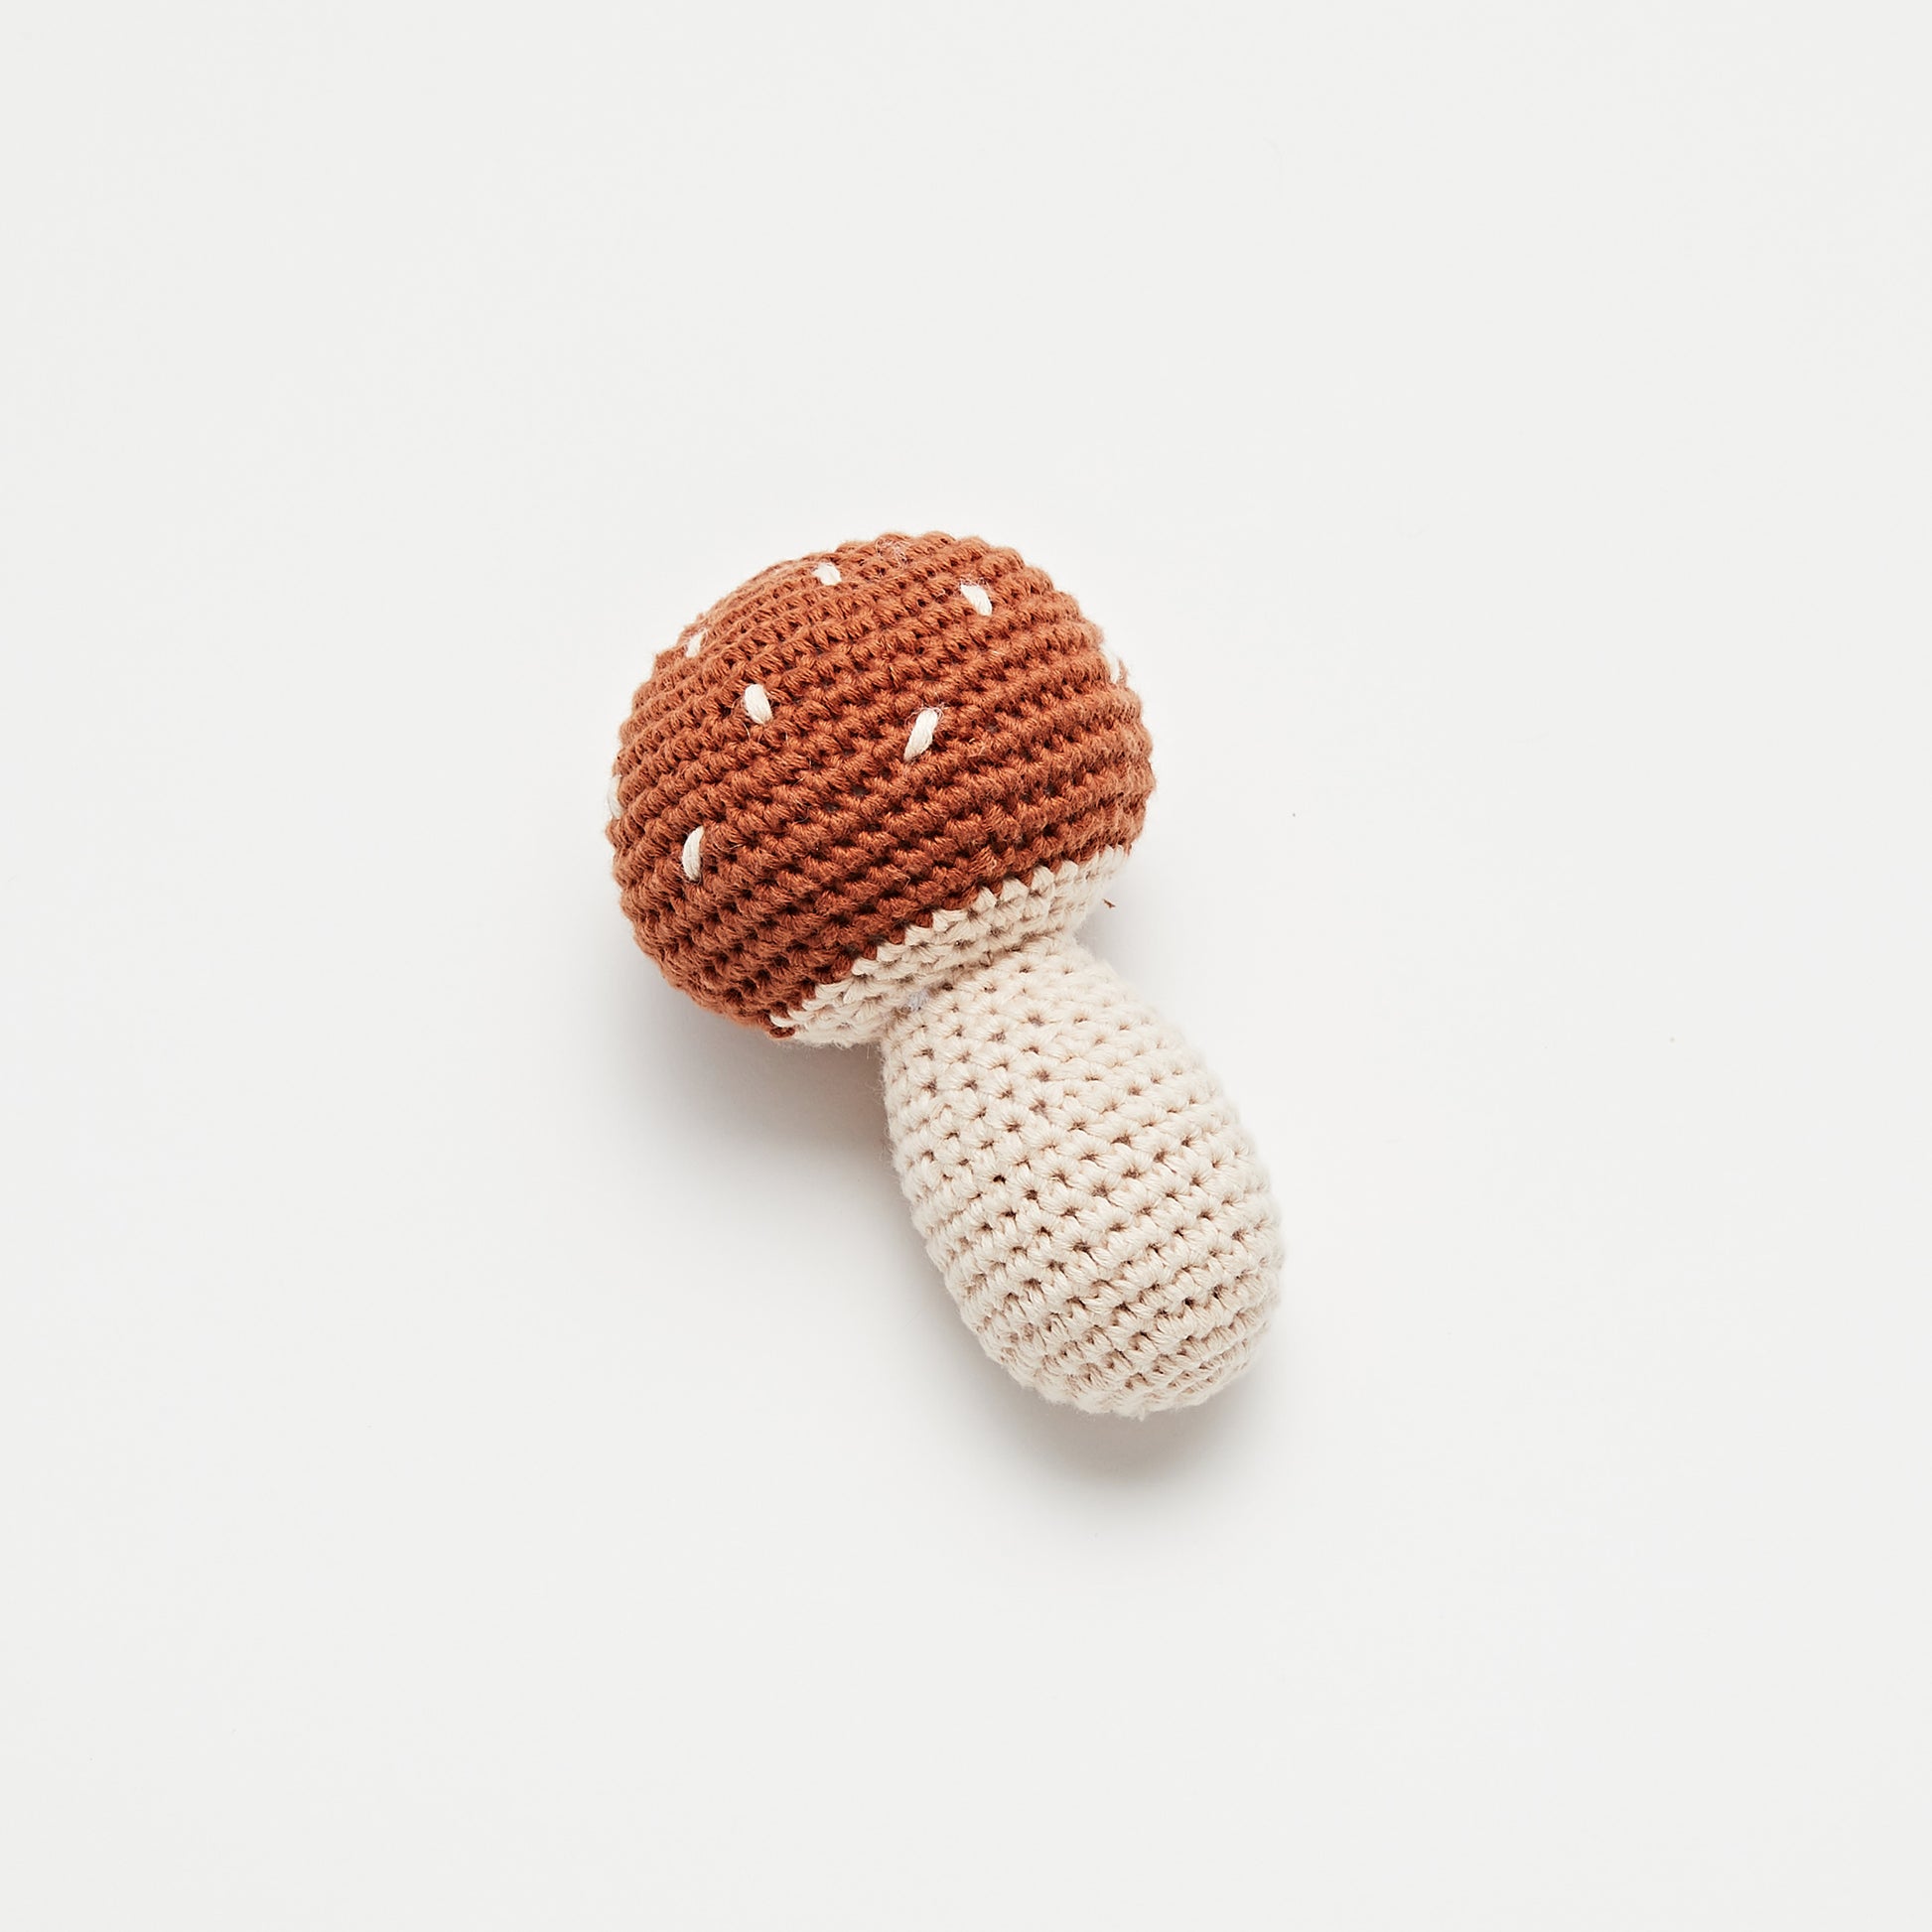 Crochet Mushroom Rattle - Little Reef and Friends